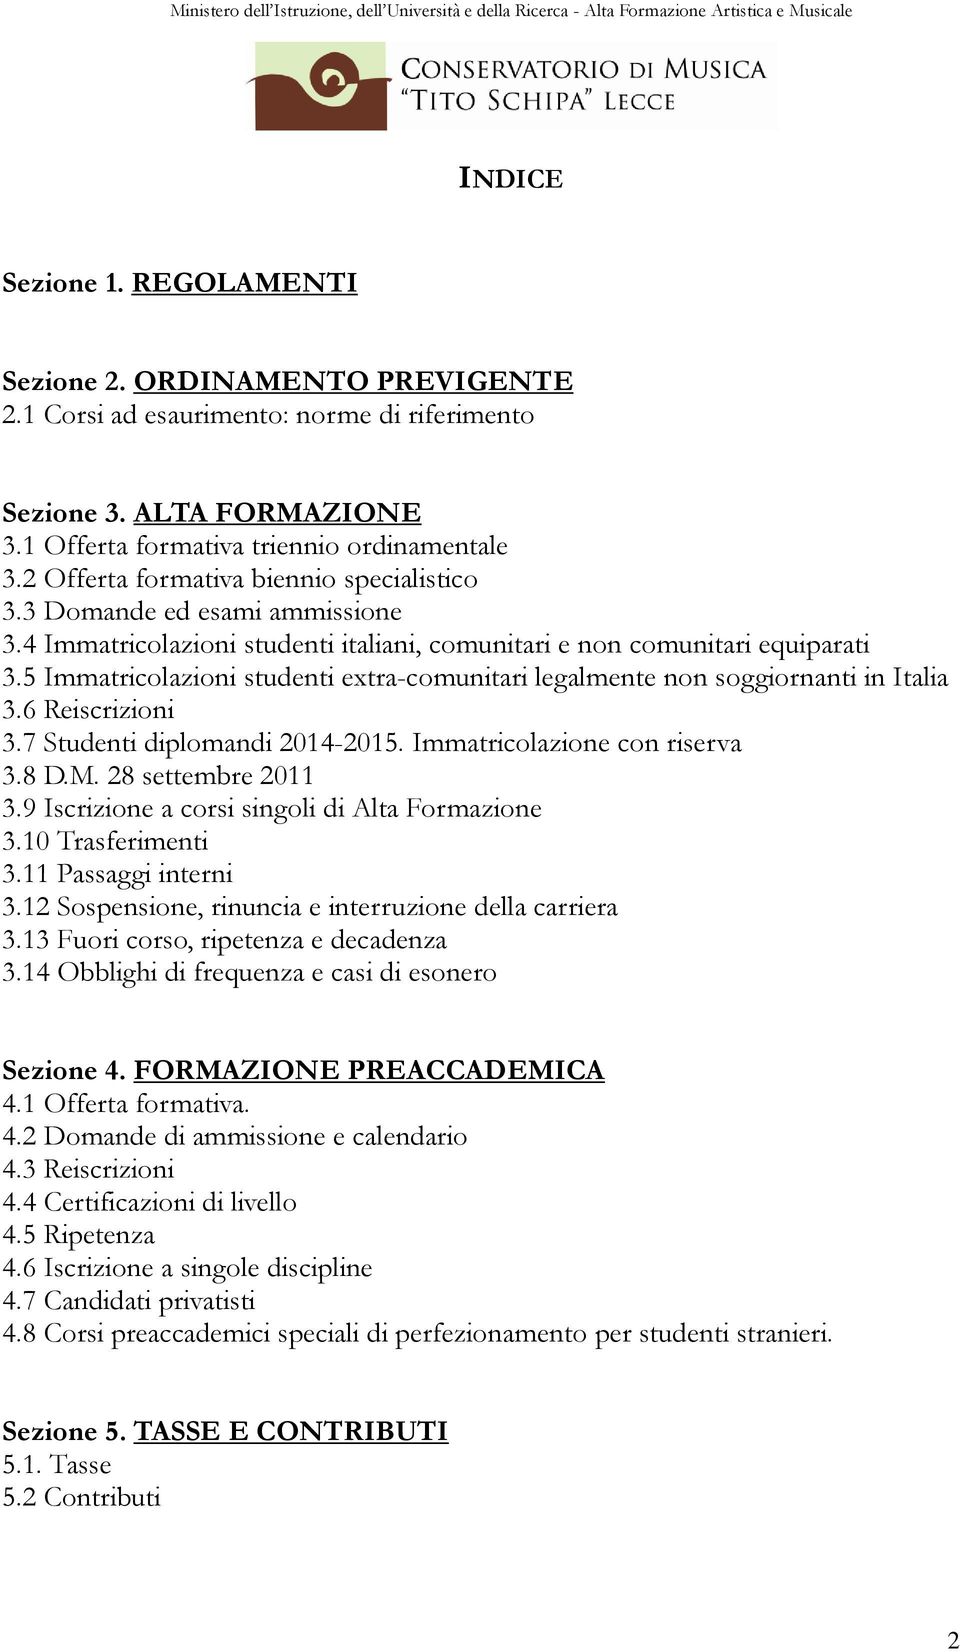 5 Immatricolazioni studenti extra-comunitari legalmente non soggiornanti in Italia 3.6 Reiscrizioni 3.7 Studenti diplomandi 2014-2015. Immatricolazione con riserva 3.8 D.M. 28 settembre 2011 3.